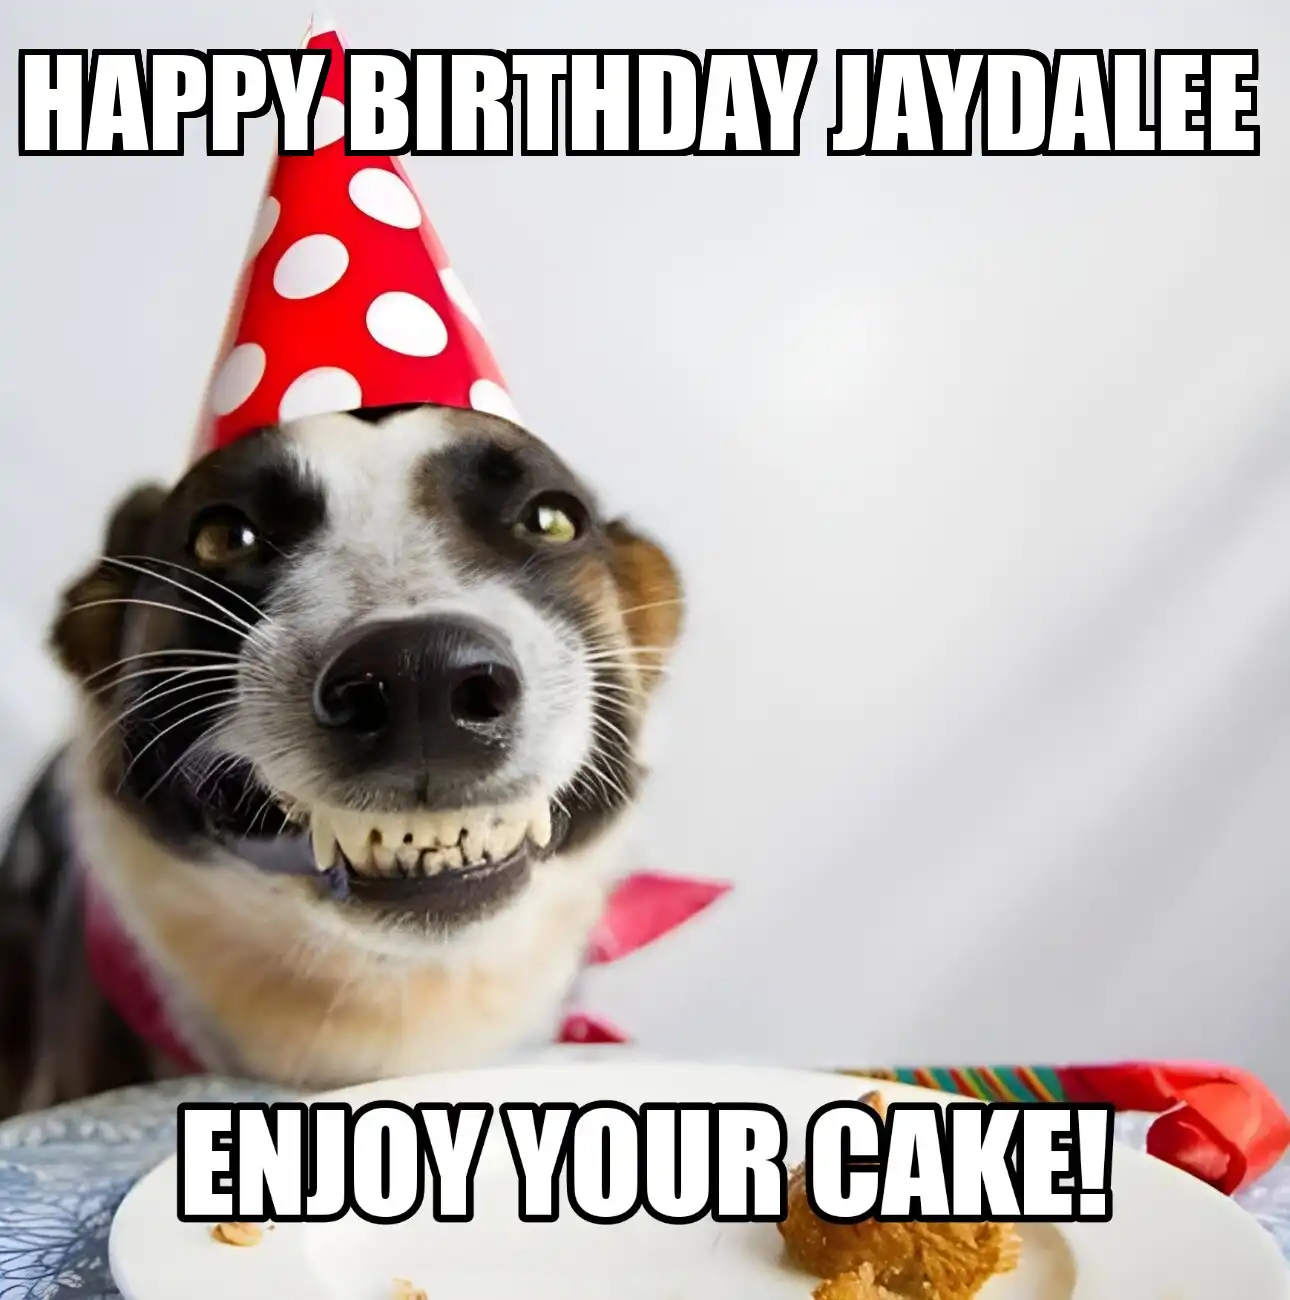 Happy Birthday Jaydalee Enjoy Your Cake Dog Meme